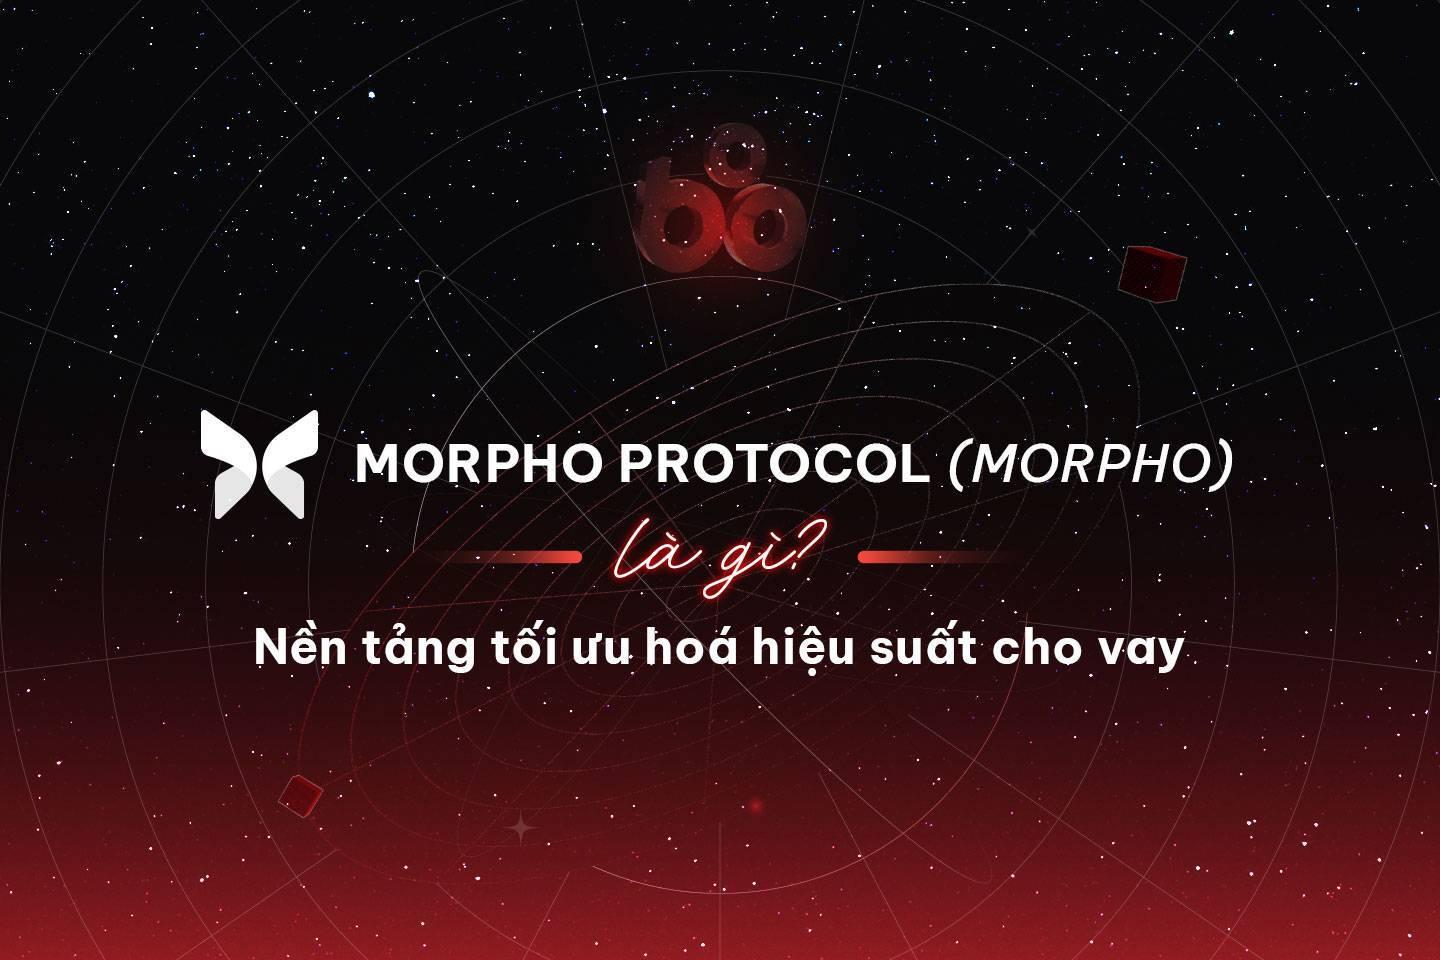 morpho-protocol-morpho-la-gi-nen-tang-toi-uu-hoa-hieu-suat-cho-vay